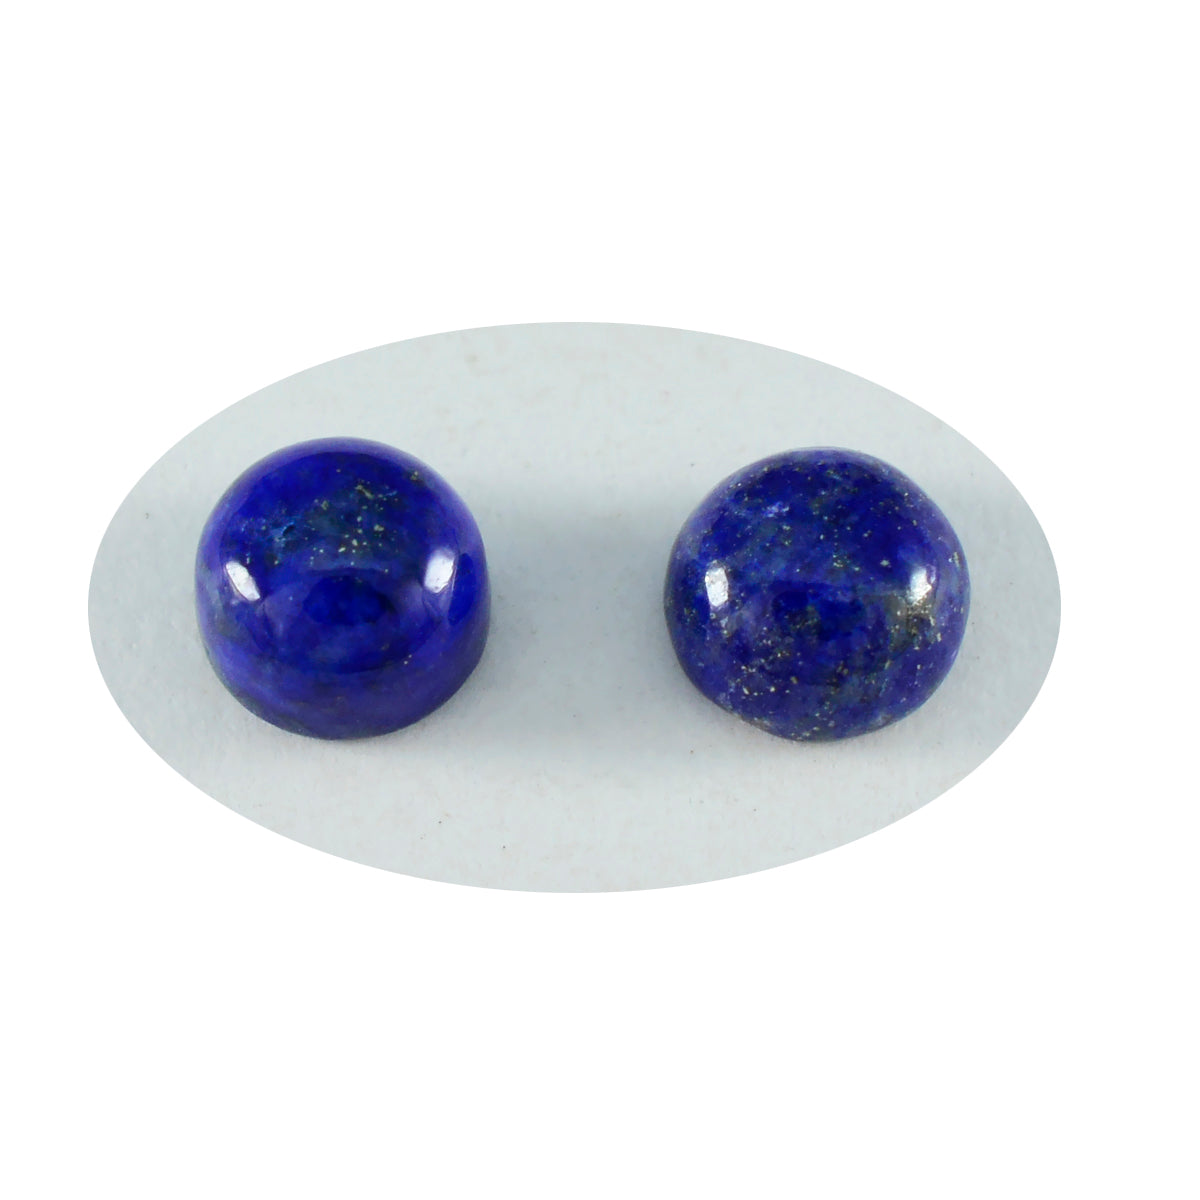 Riyogems 1 Stück blauer Lapislazuli-Cabochon, 7 x 7 mm, runde Form, ausgezeichnete Qualität, loser Stein